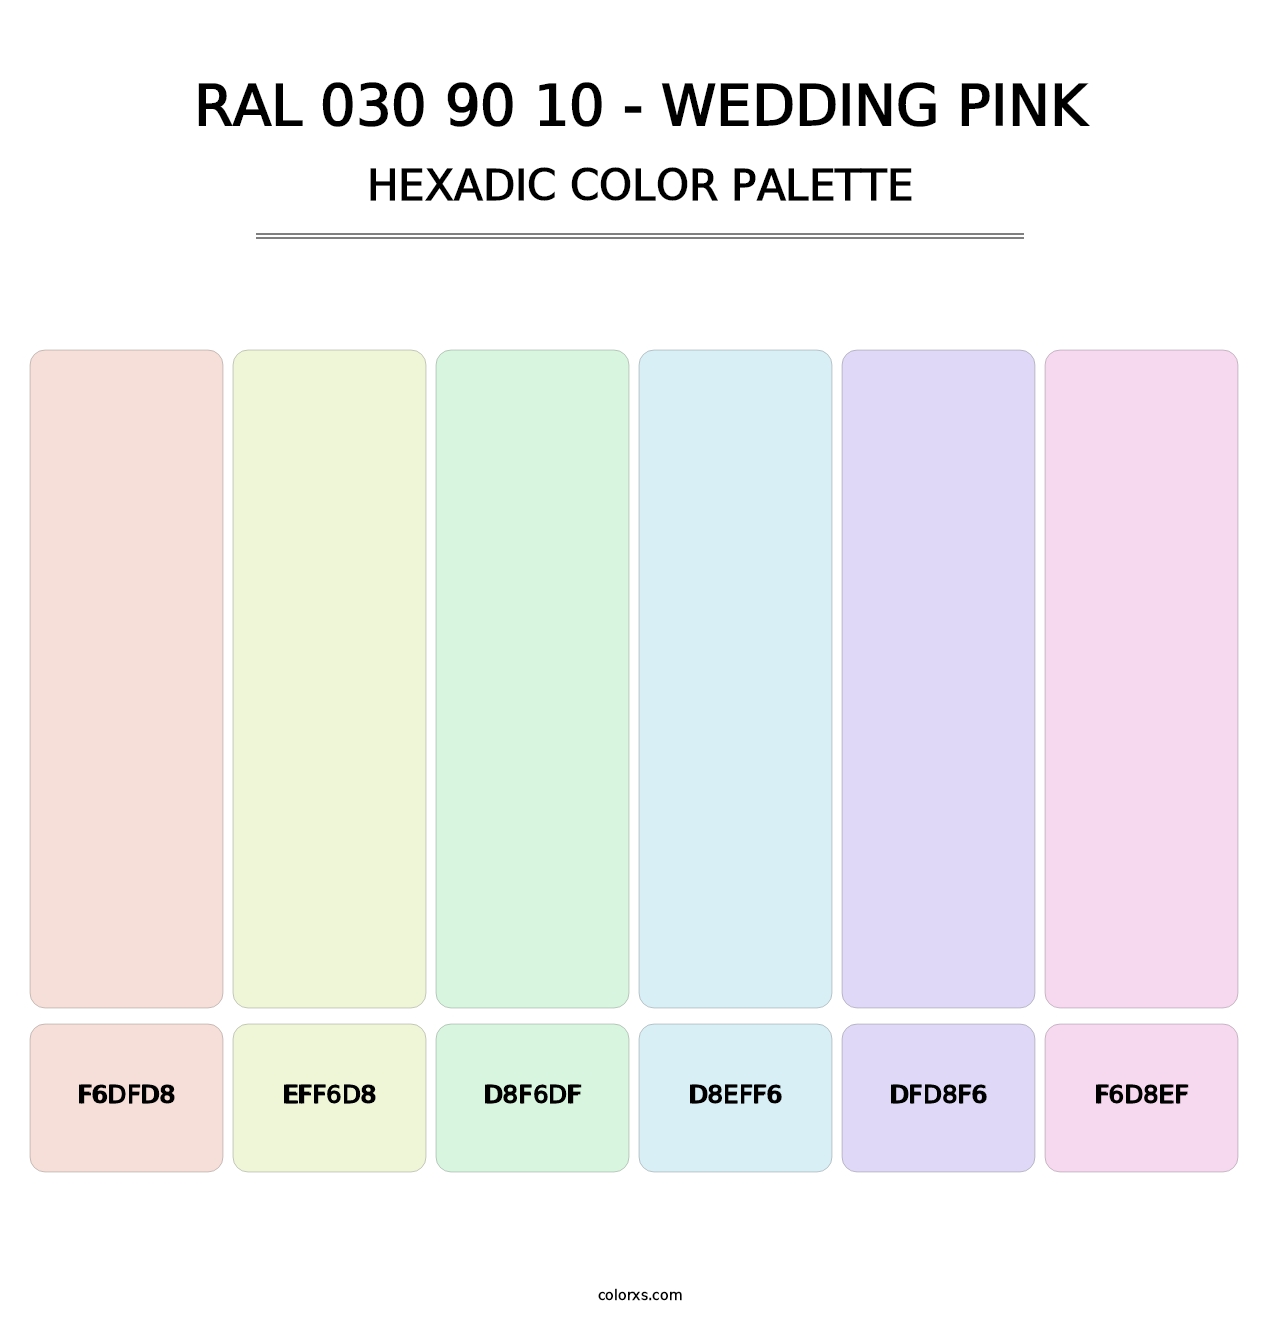 RAL 030 90 10 - Wedding Pink - Hexadic Color Palette